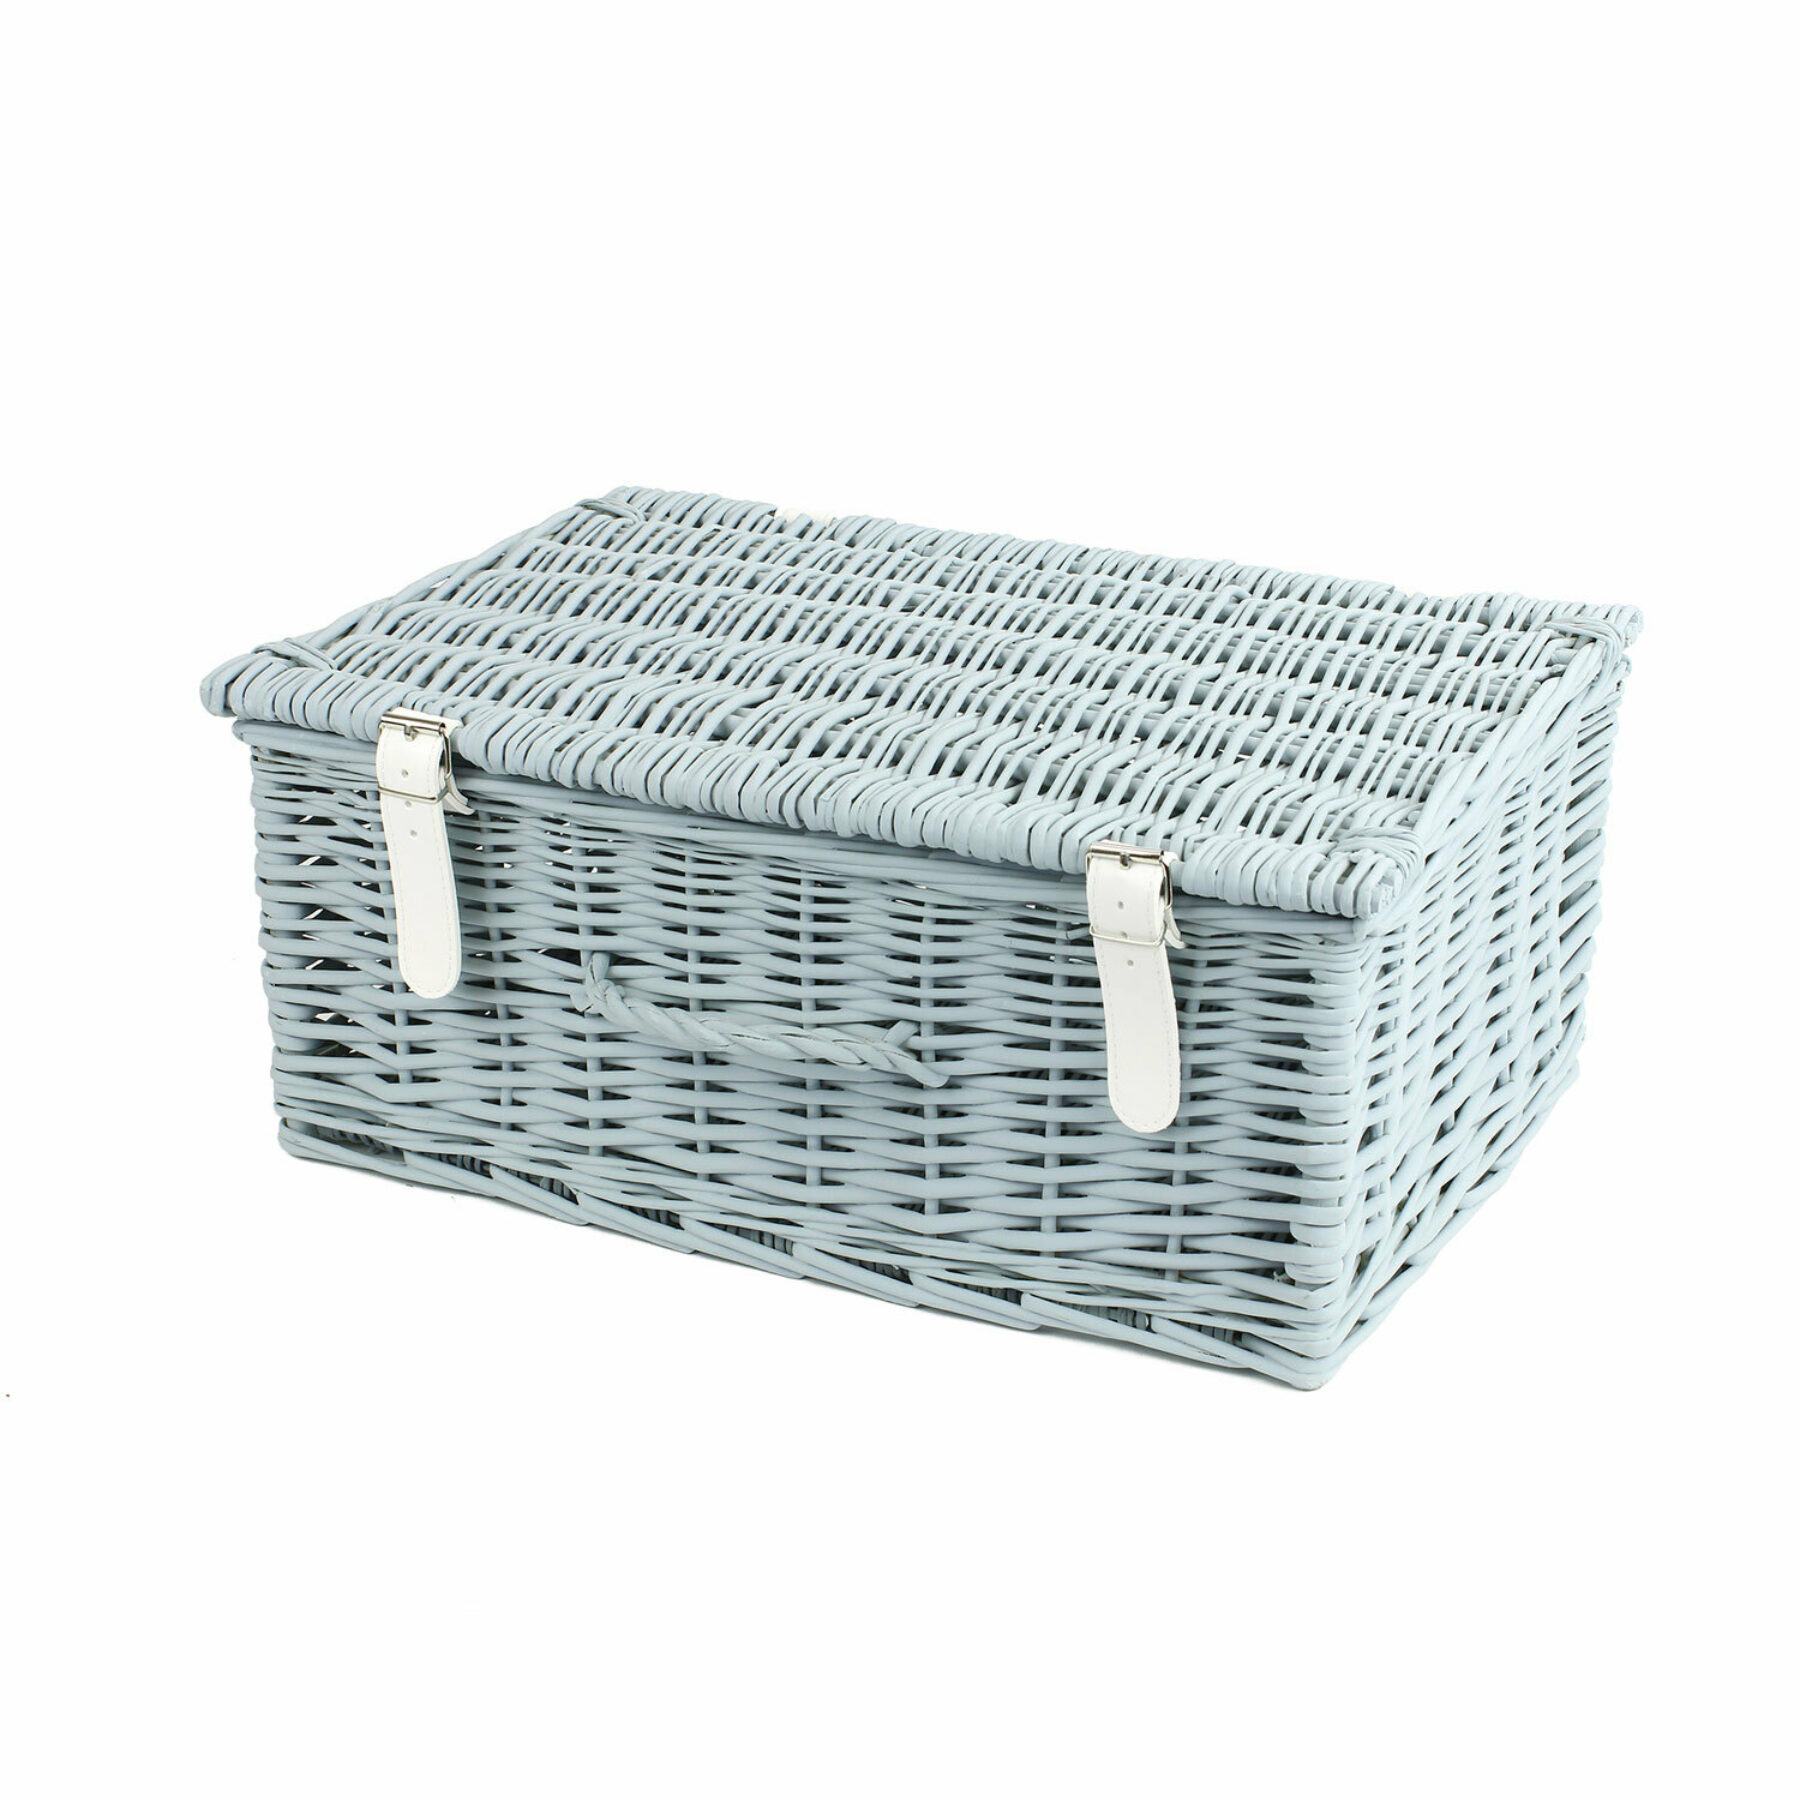 18 Inch Wicker Hamper Basket - Light Grey